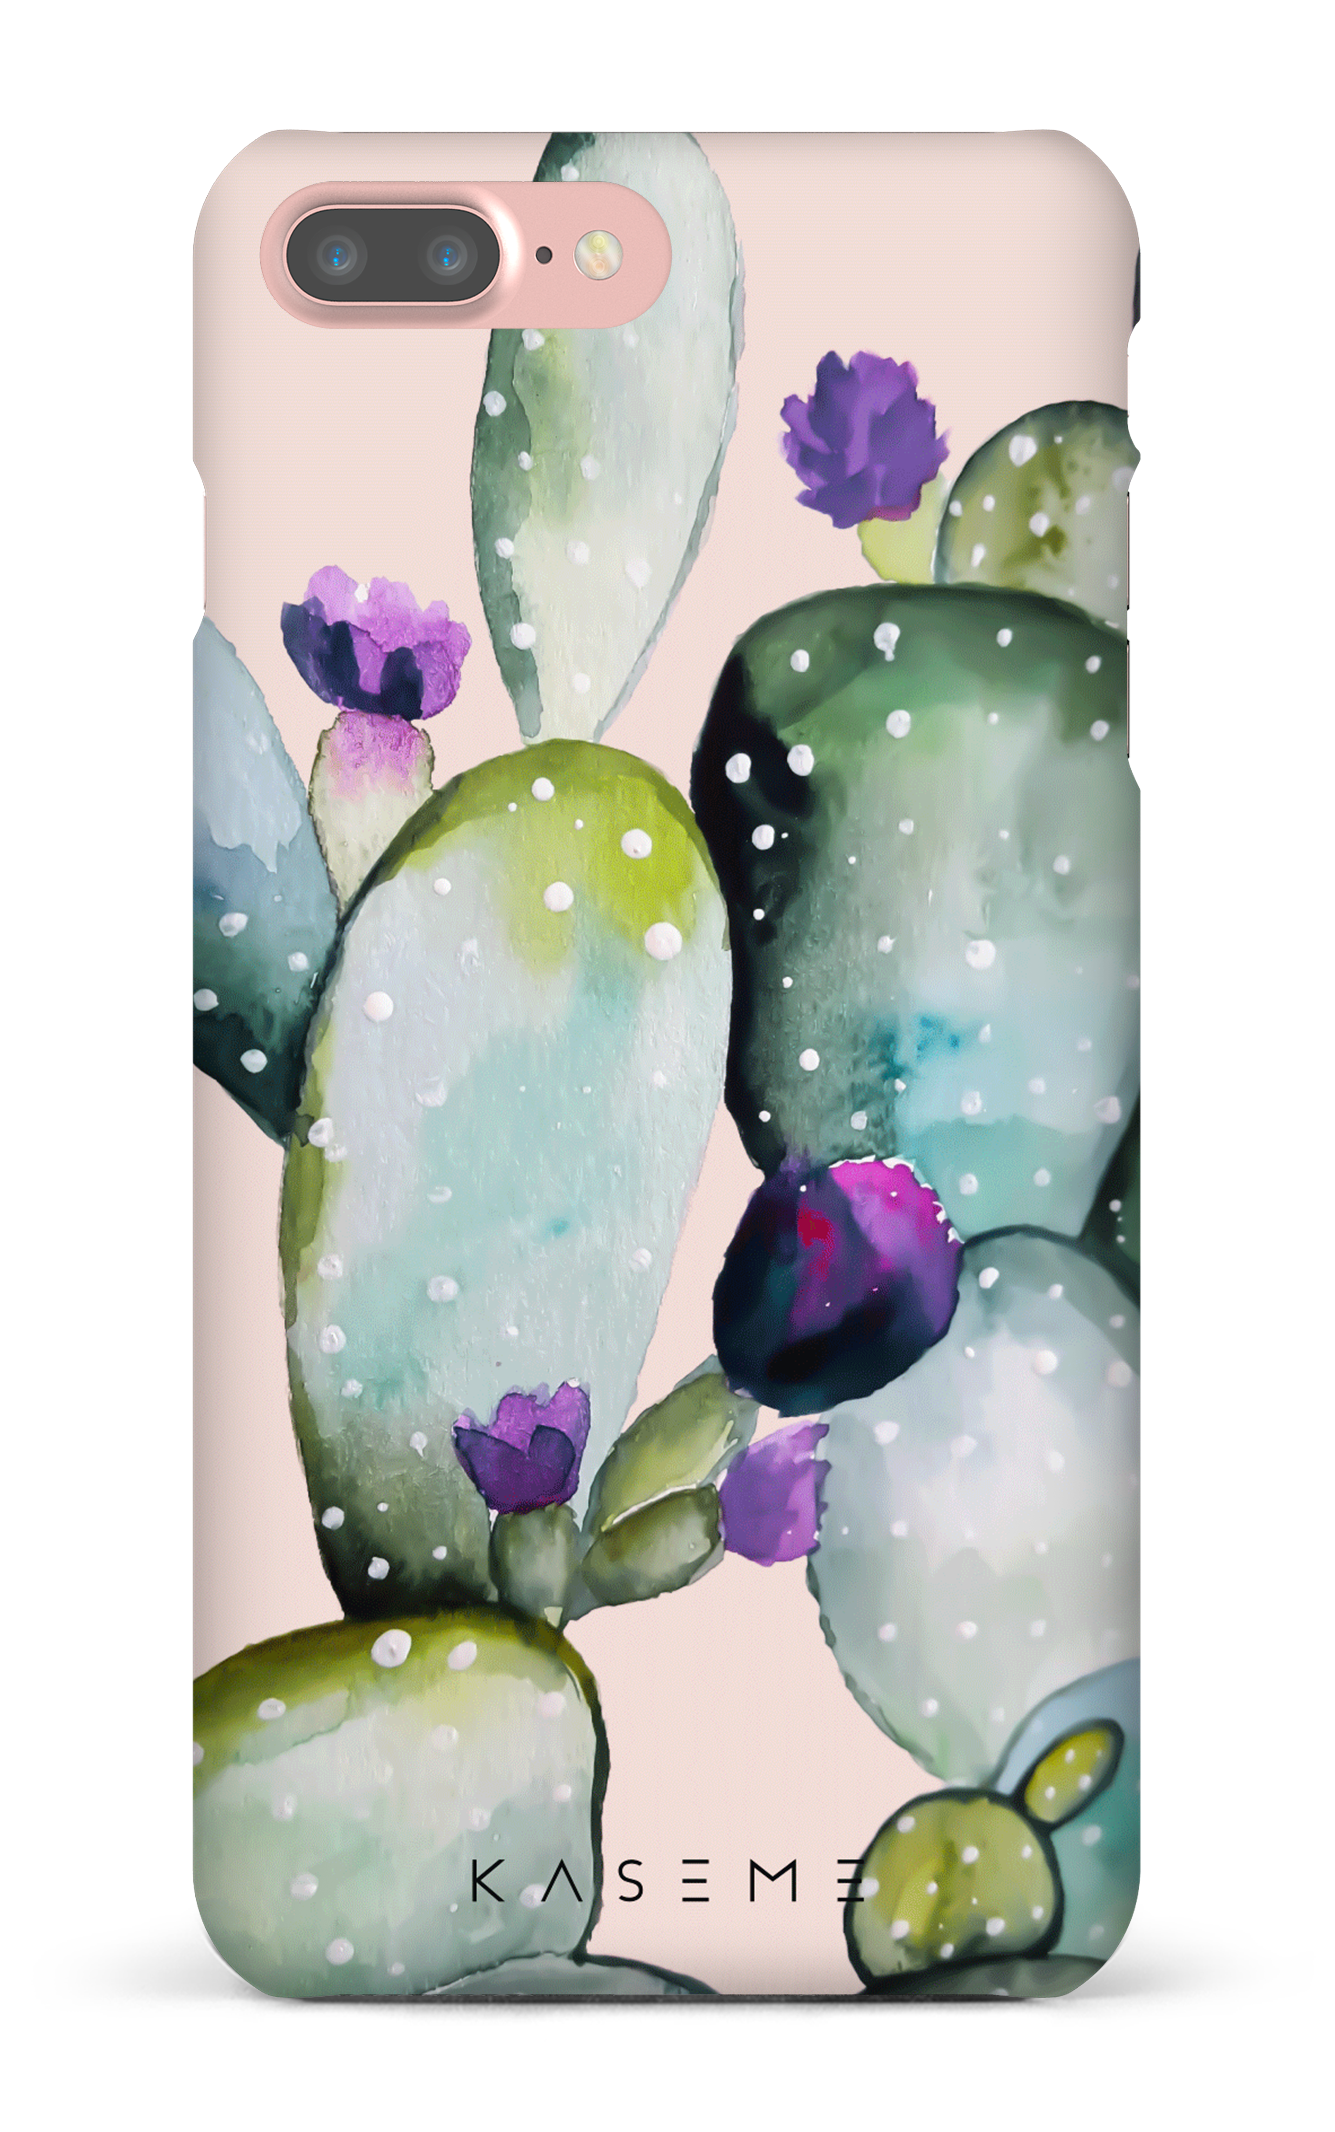 Cactus Flower - iPhone 7 Plus